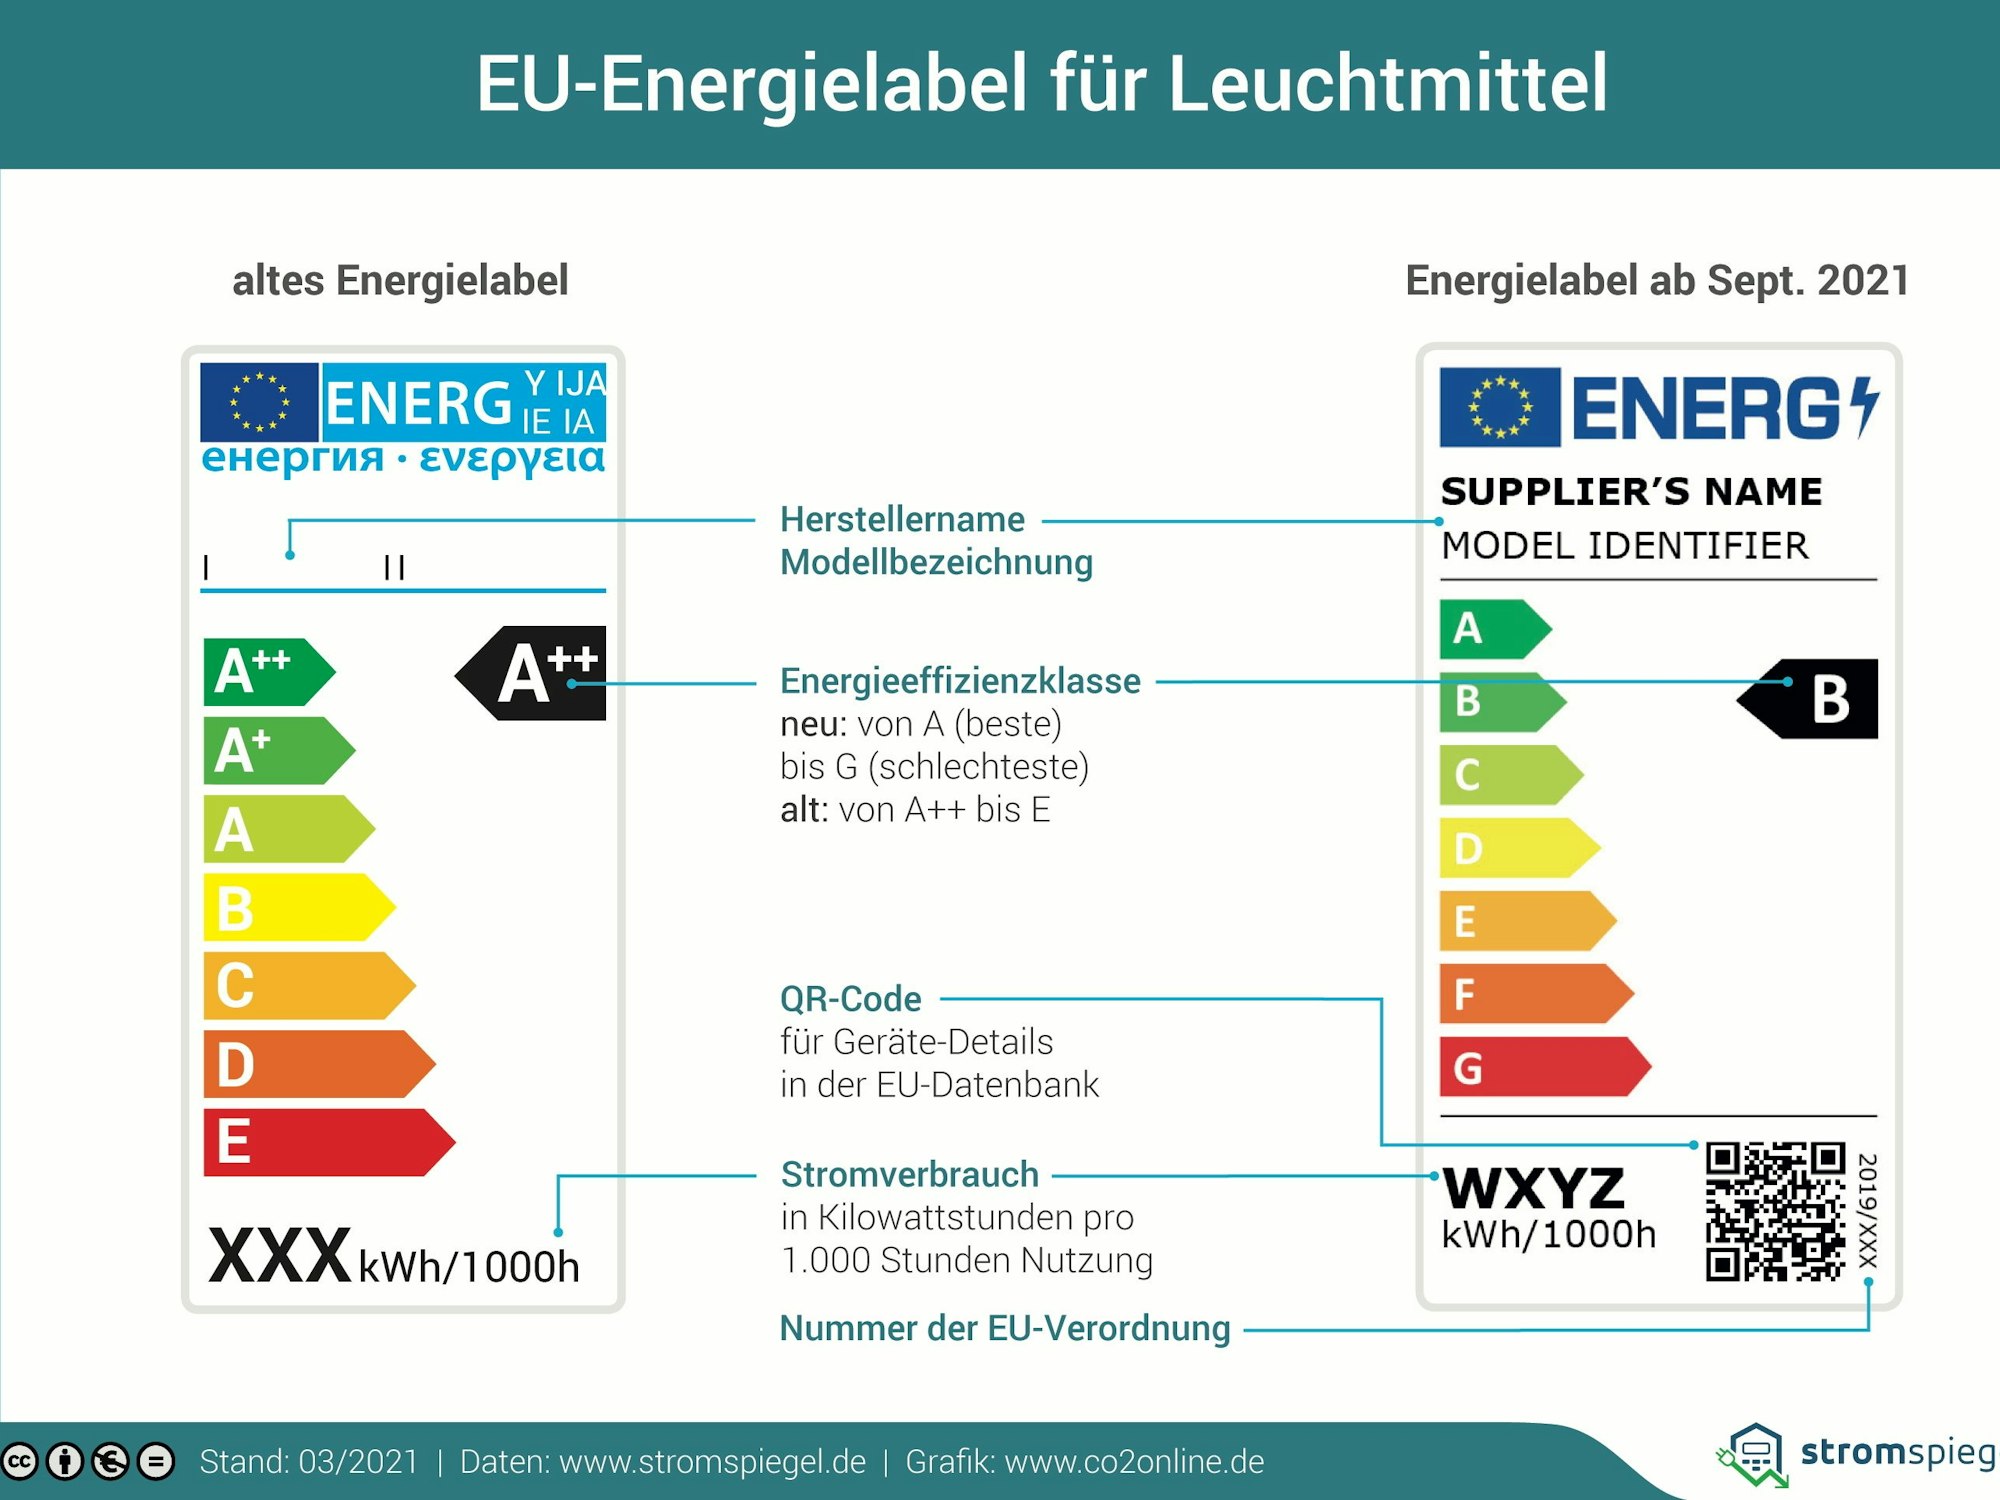 Die Energieeffizienzklassen wurden geändert. Die Bezeichnung A++ und A+ wurde abgeschafft. Auf dem Foto sieht man das alte und das neue EU-Label für Lampen im Vergleich.